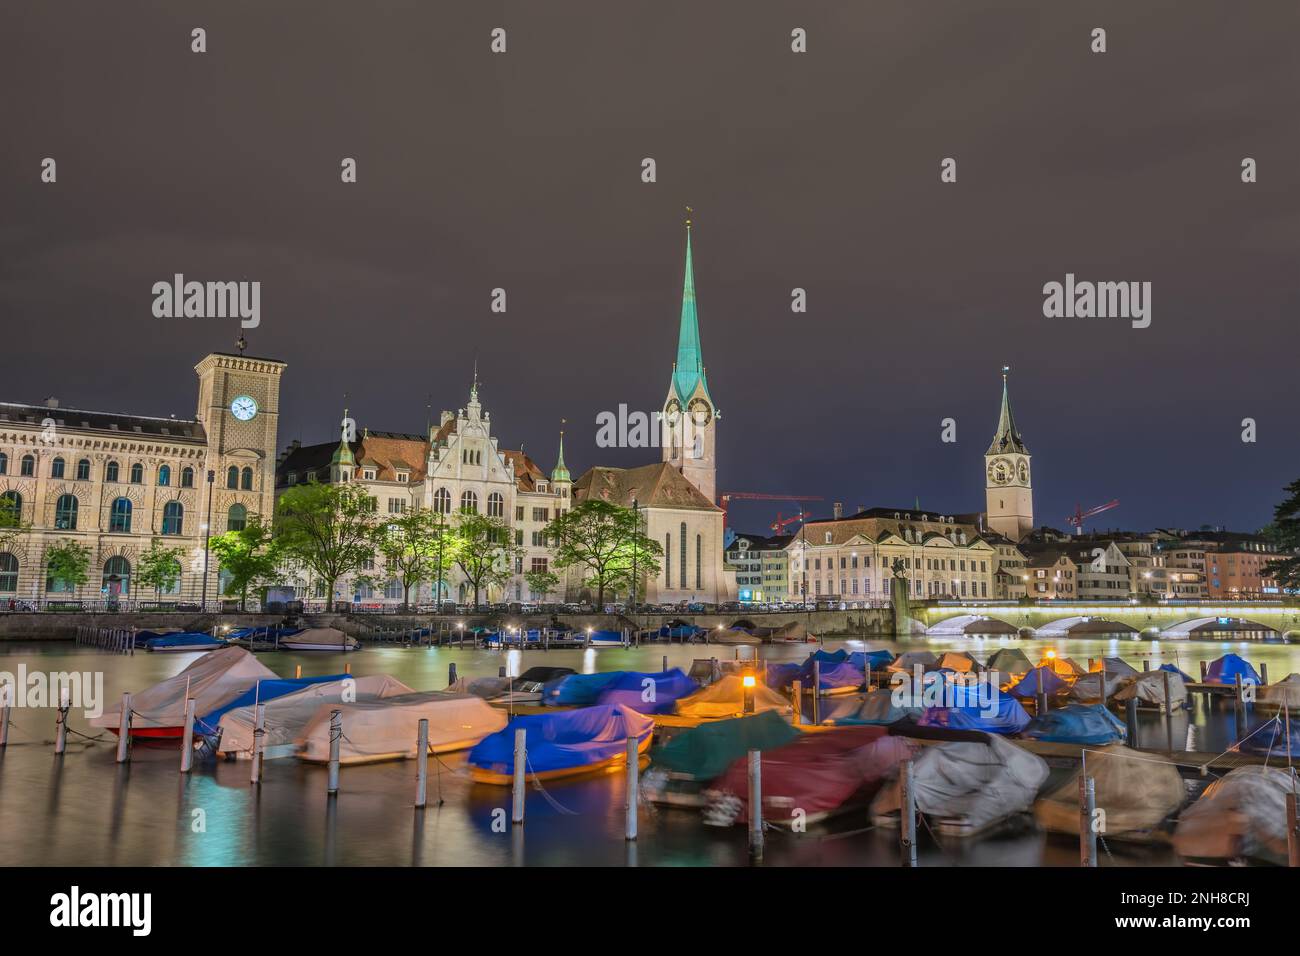 Zurich Switzerland, night city skyline at Fraumunster Church and Munster Bridge Stock Photo